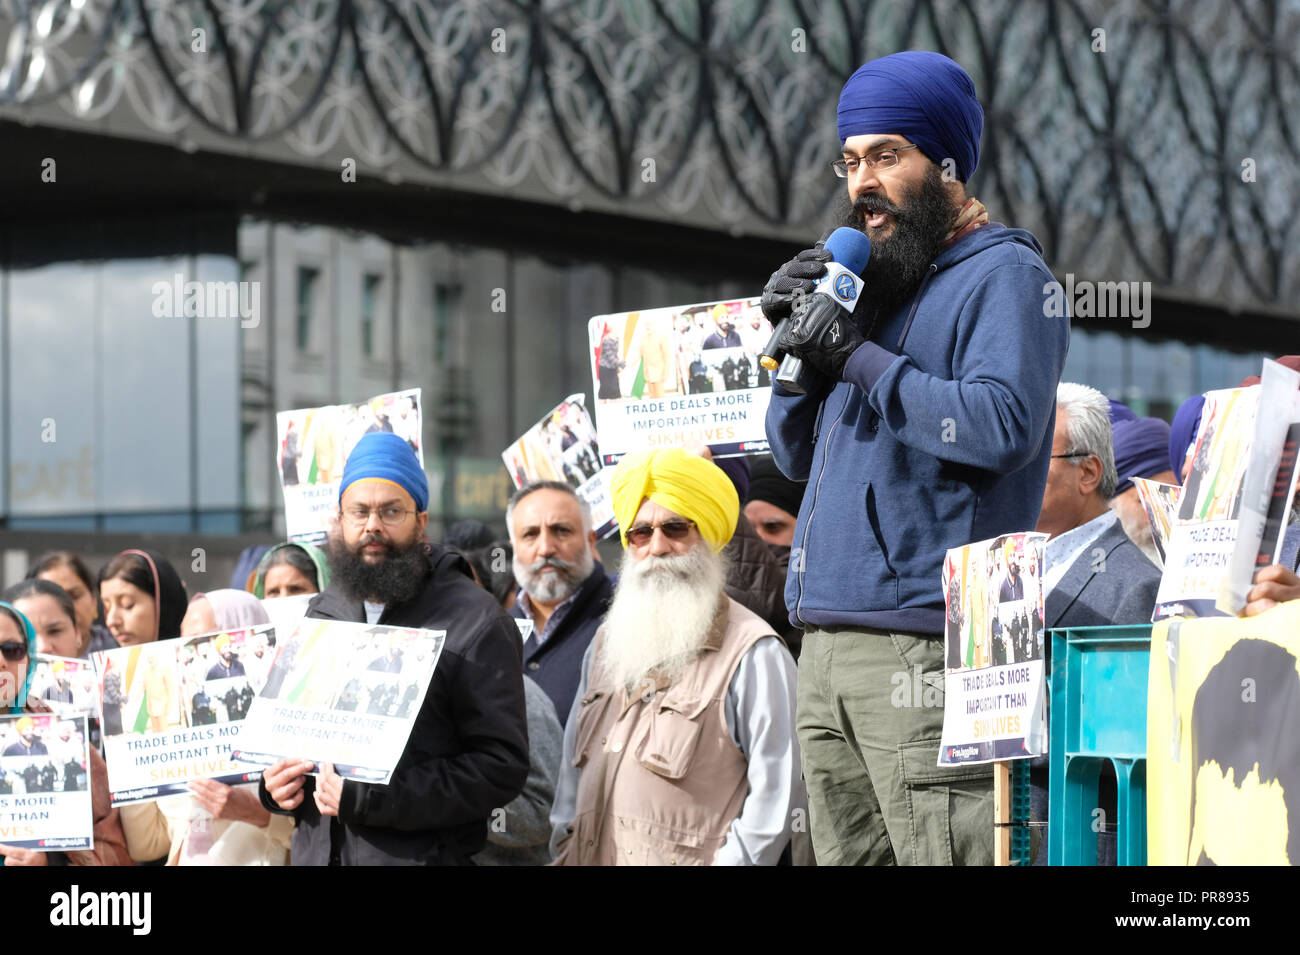 Birmingham, Regno Unito - 30 settembre 2018. Altoparlante a una manifestazione di protesta per chiedere il rilascio di Jagtar Singh Johal, 31 anni Sikh inglesi dalla Scozia detenuti in India per quasi un anno - la protesta è stata organizzata dalla Libera Jaggi ora gruppo. Foto Steven Maggio / Alamy Live News Foto Stock